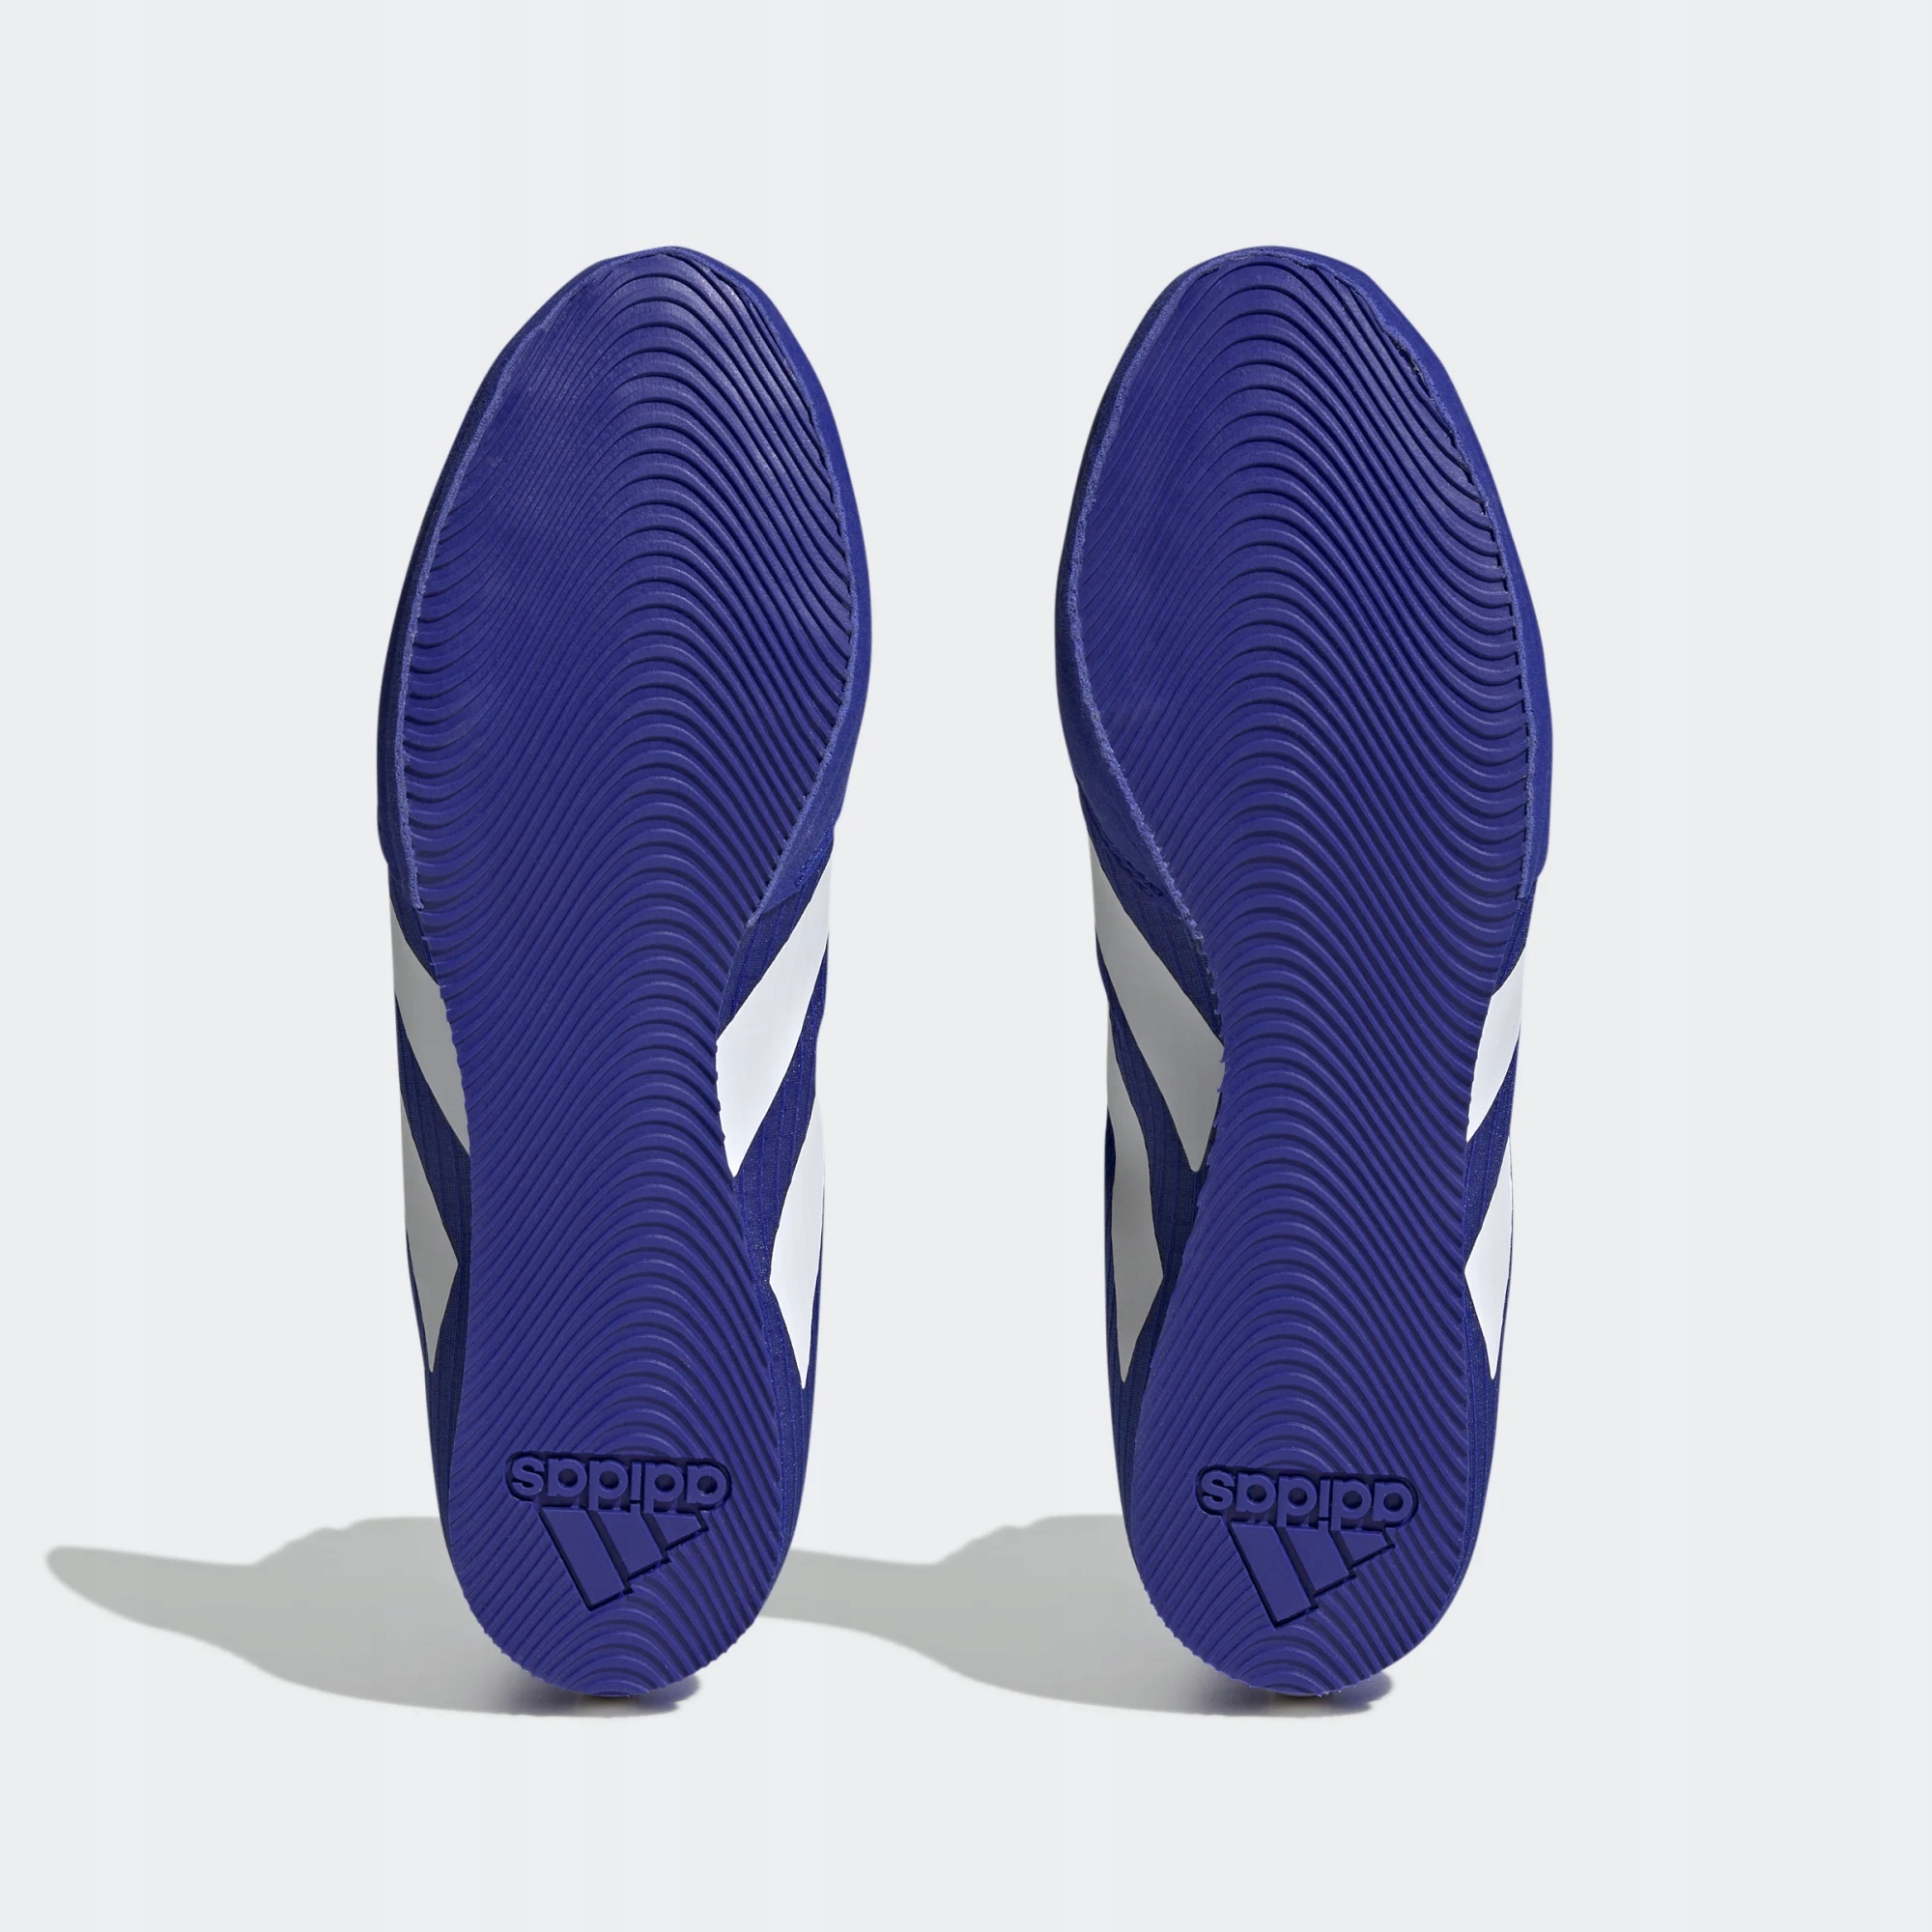 Boxerské boty adidas BOX HOG 4 44 2/3 odstíny za 2487 Kč - Allegro